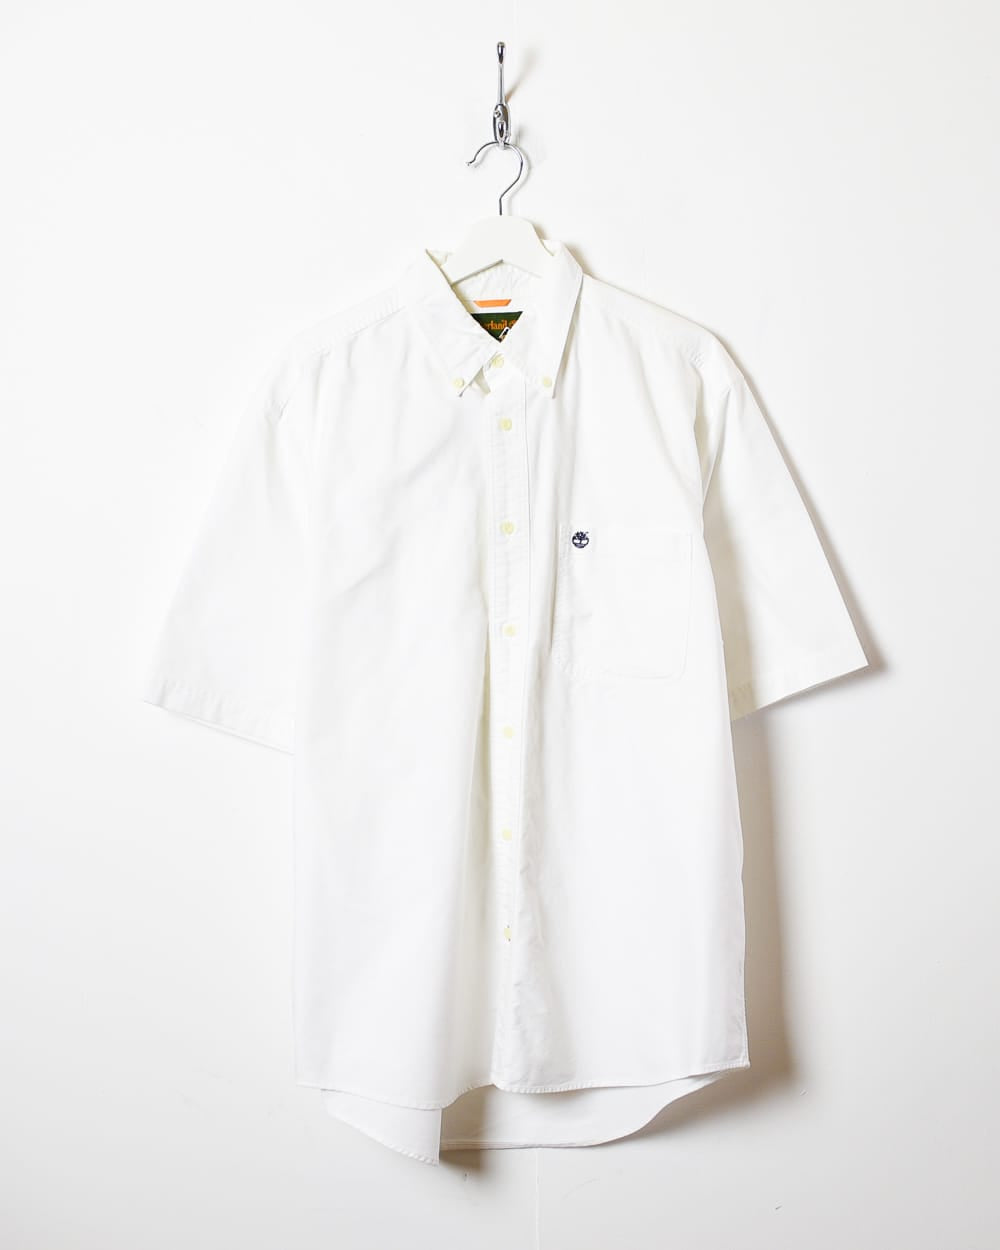 White Timberland Short Sleeved Shirt - Large